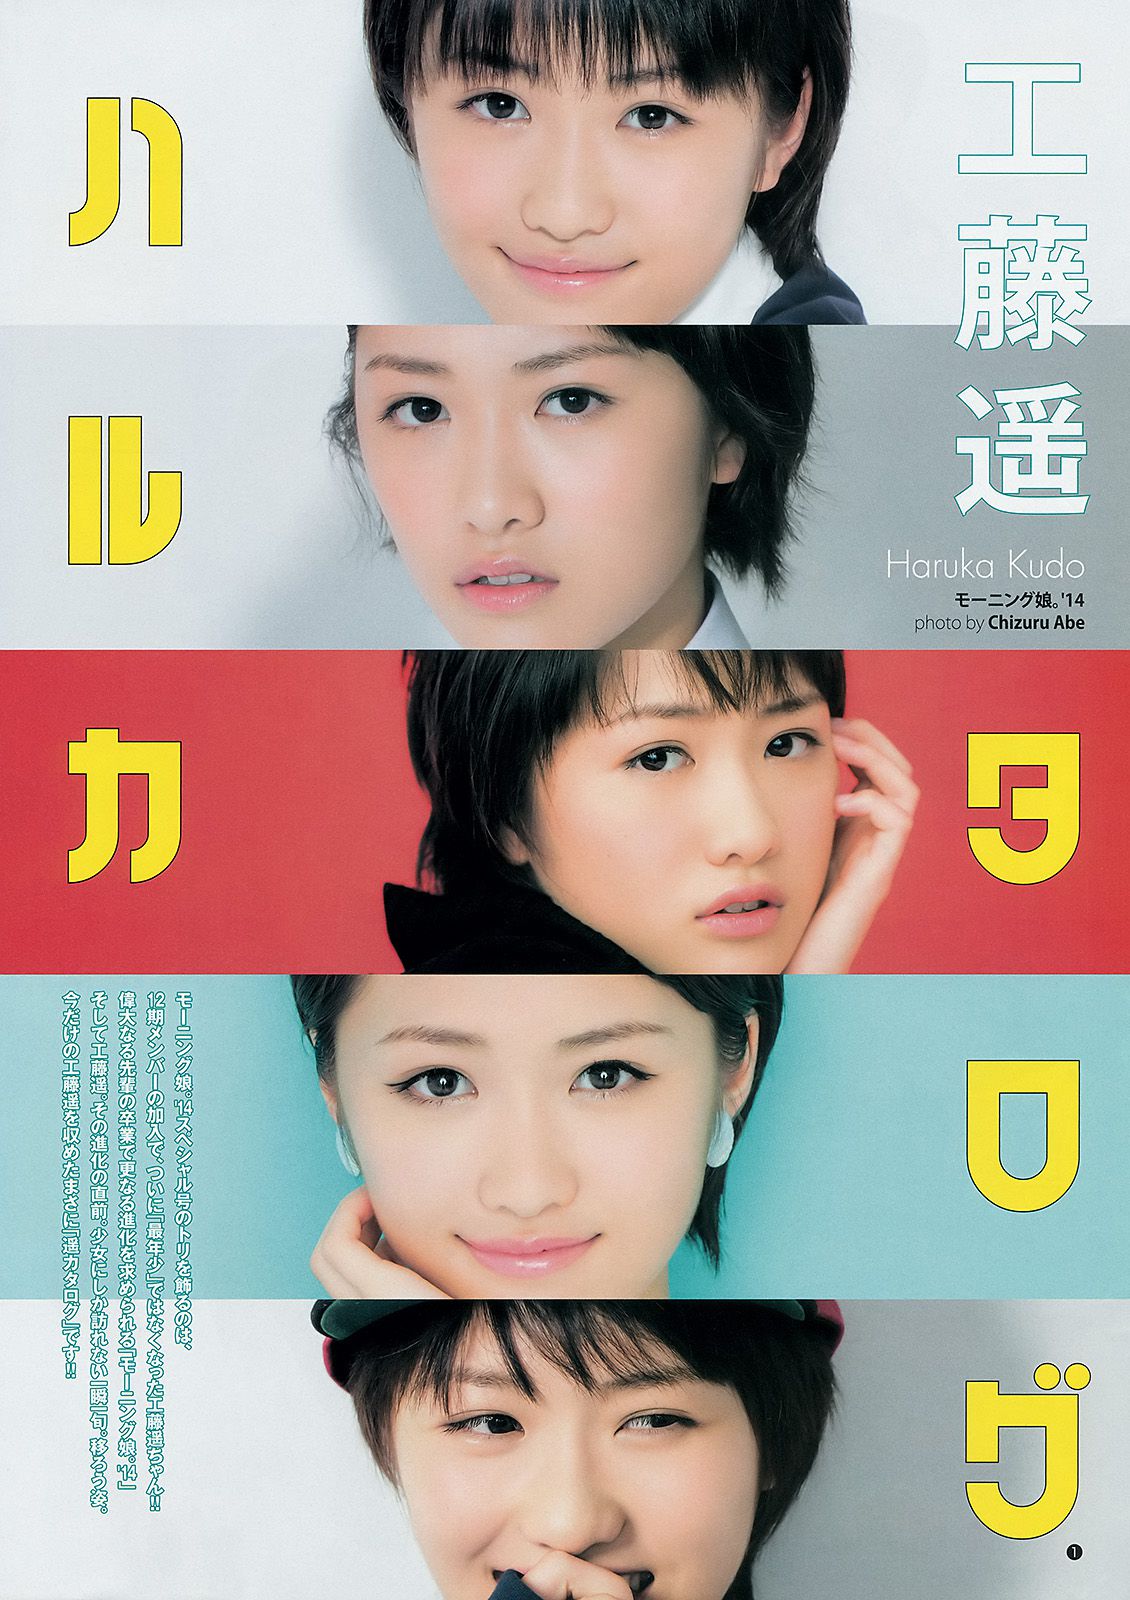 Riho Sayashi Haruka Kudo Sayumi Michishige (Morgenmusume. '14) [Wöchentlicher junger Sprung] 2014 Nr. 47 Foto Seite 23 No.f28b02